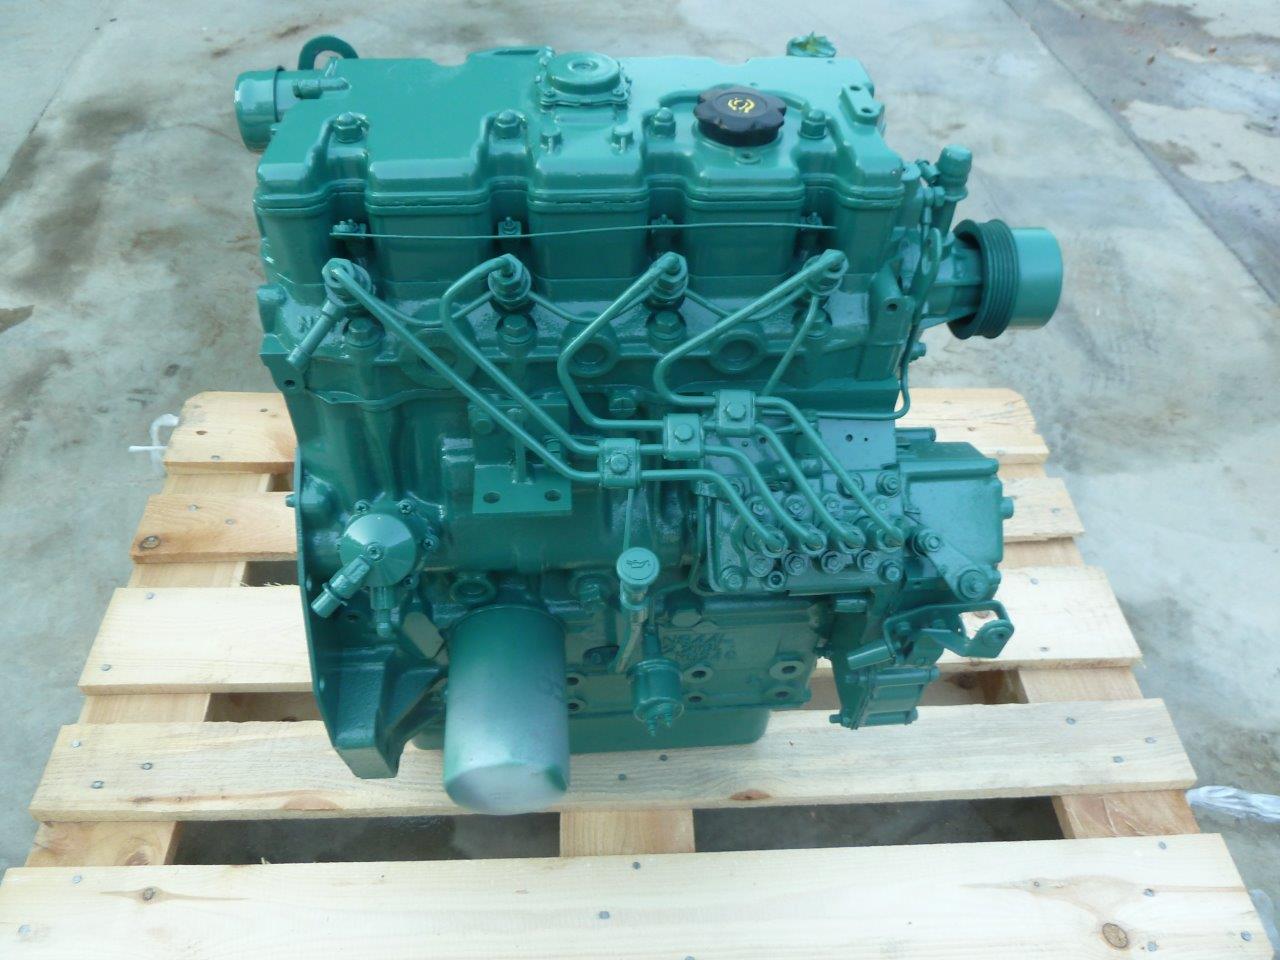 shibaura diesel engine swap